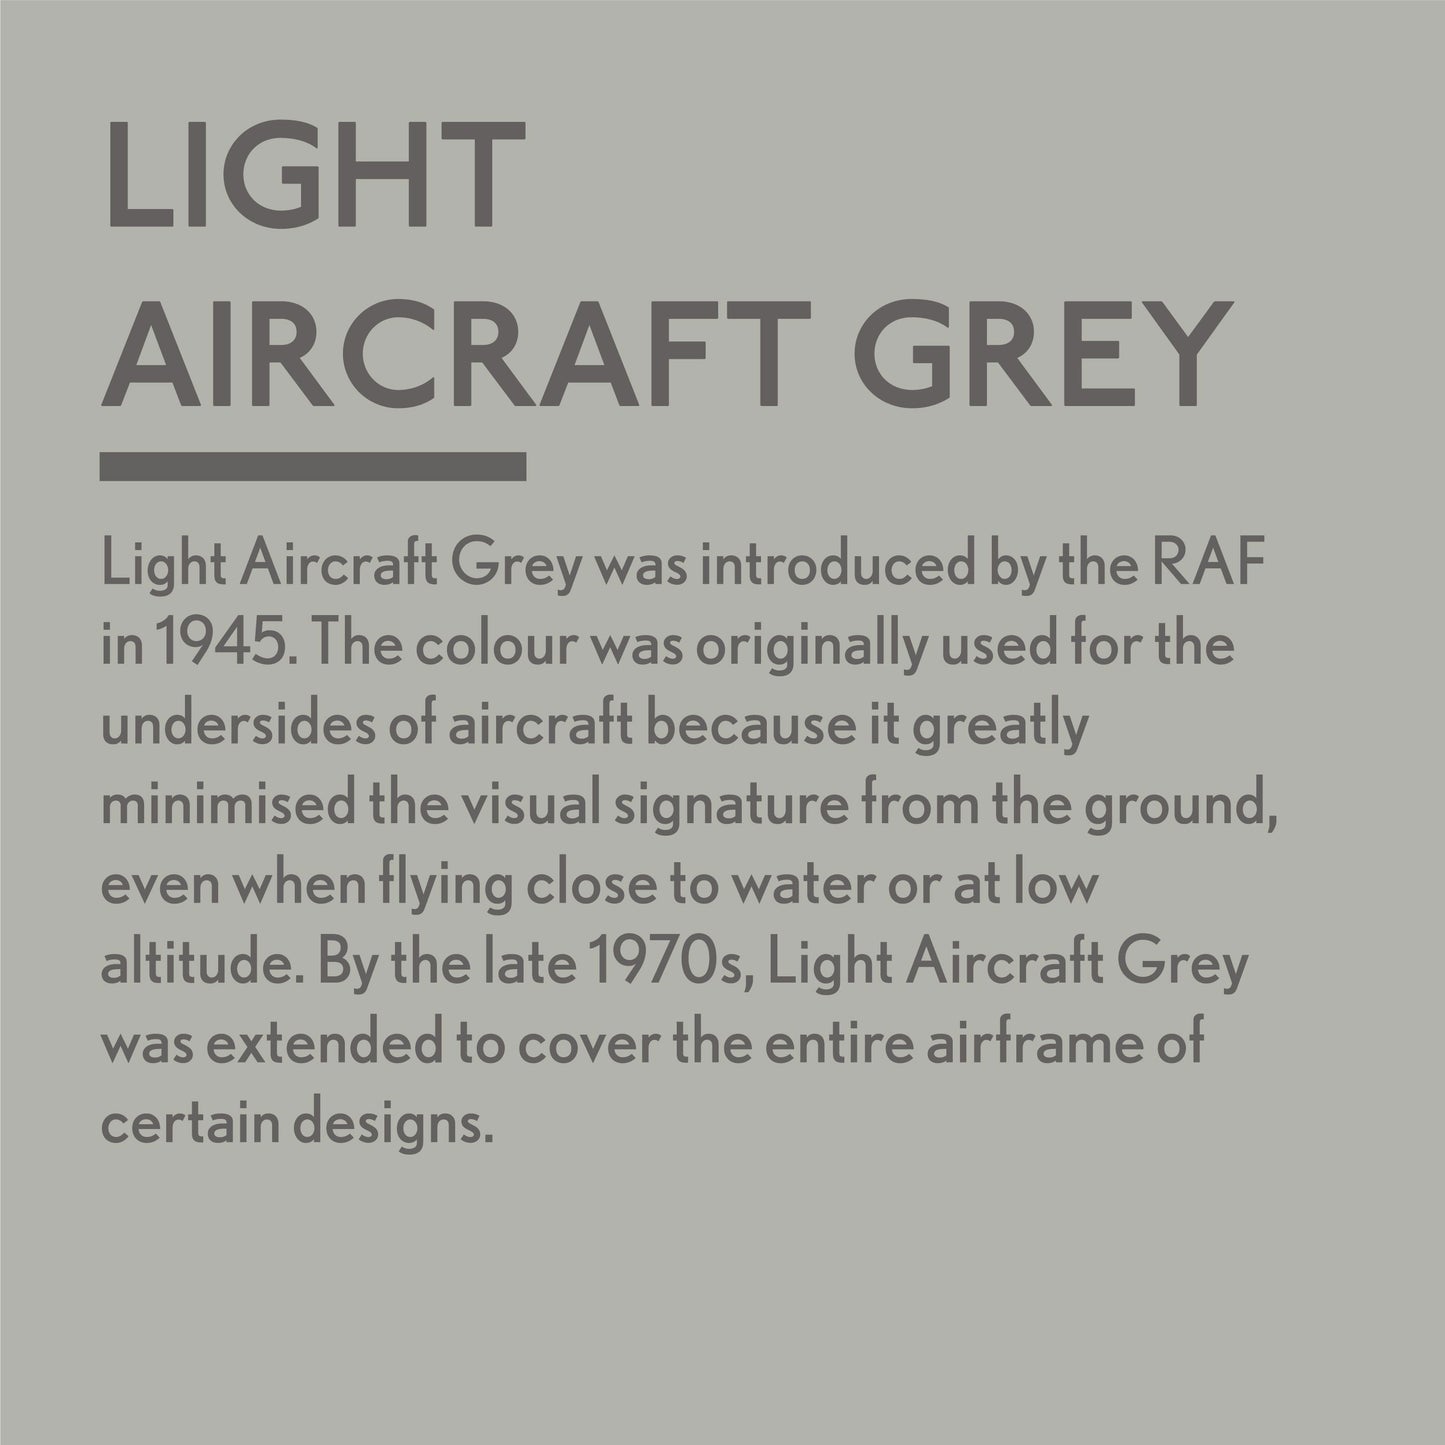 Light Aircraft Grey